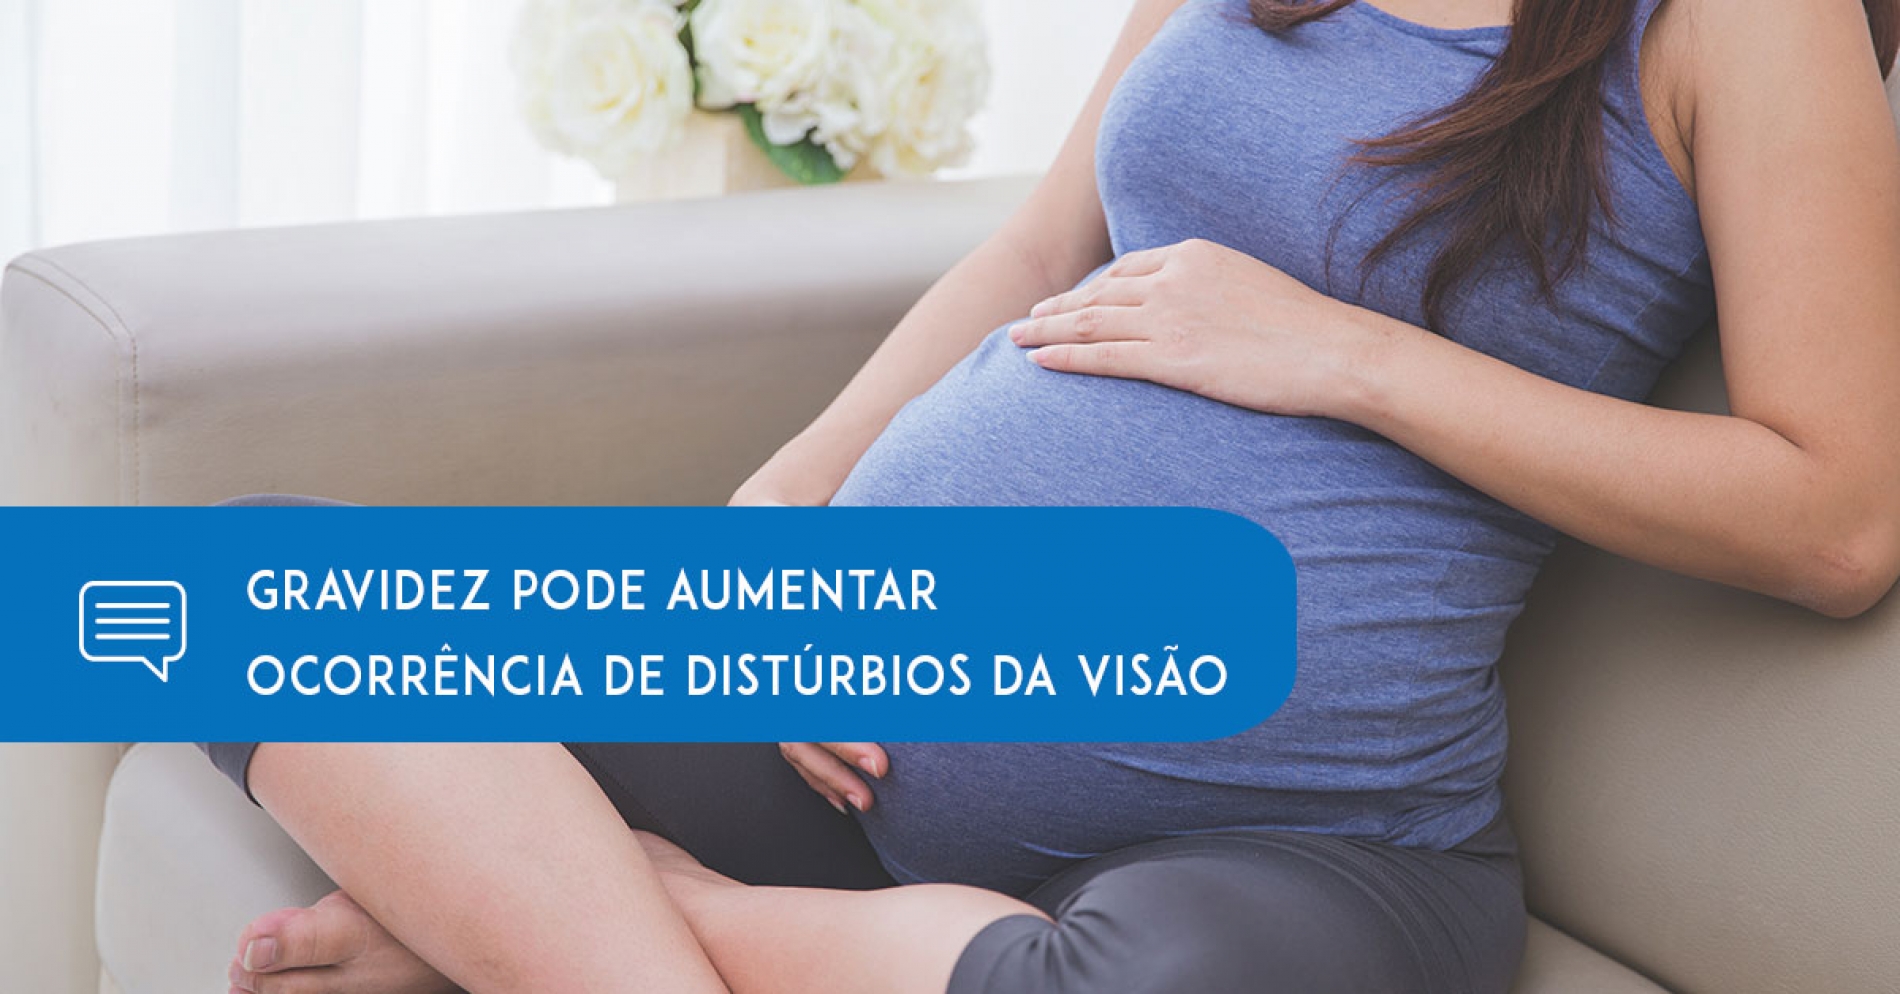 Mês das Mães – Gravidez pode aumentar ocorrência de distúrbios da visão - Eduardo Paulino